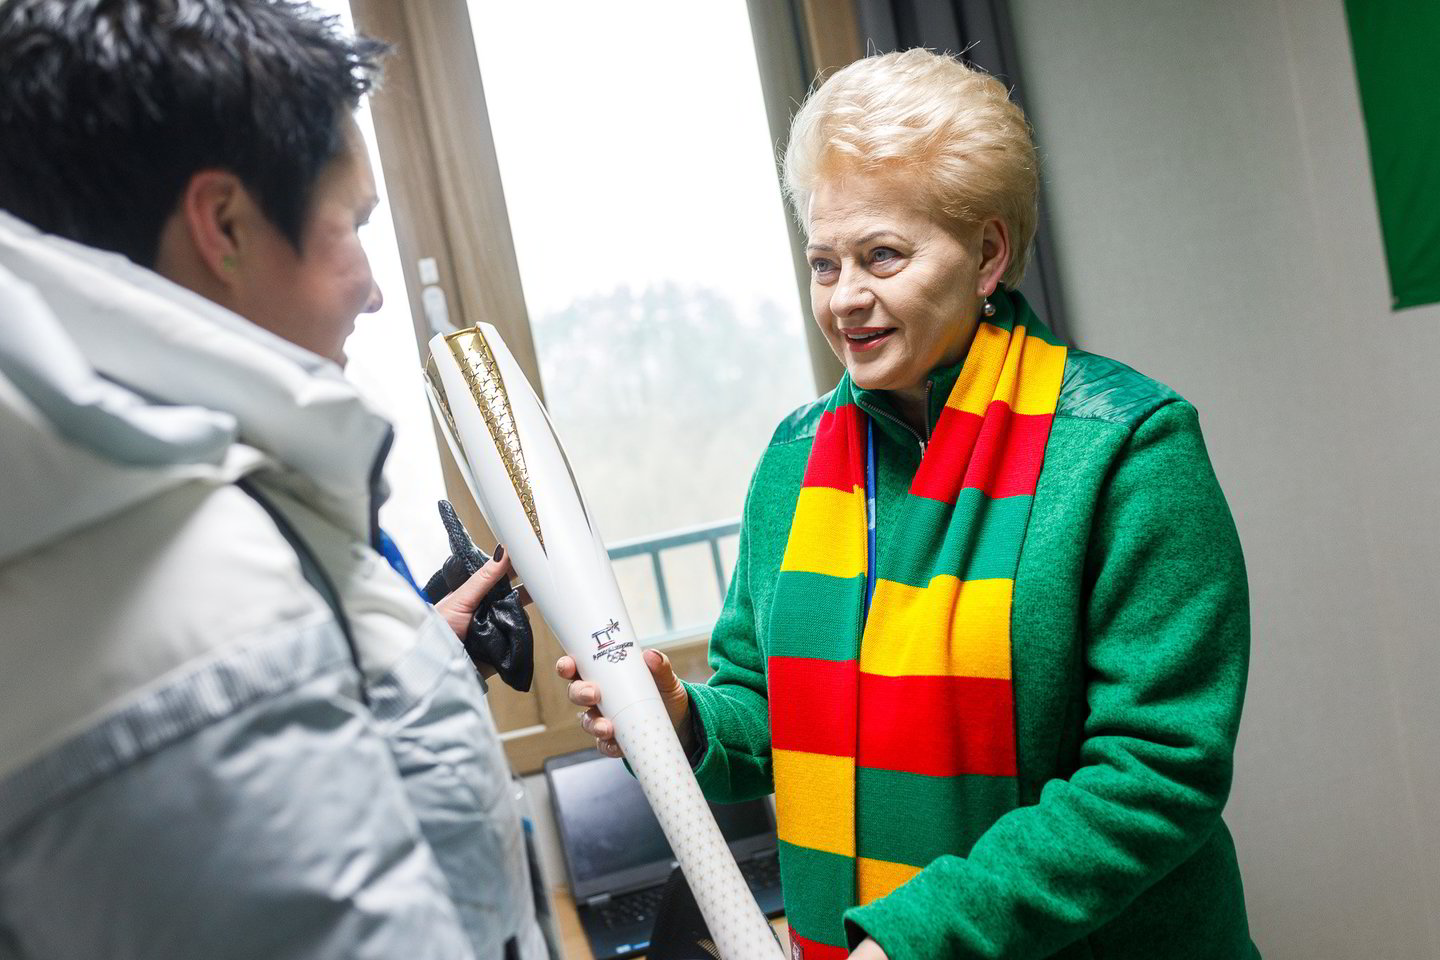  D.Grybauskaitė Pjongčango olimpiniame kaimelyje aplankė Lietuvos sportininkus ir delegaciją.<br> V.Dranginio nuotr.